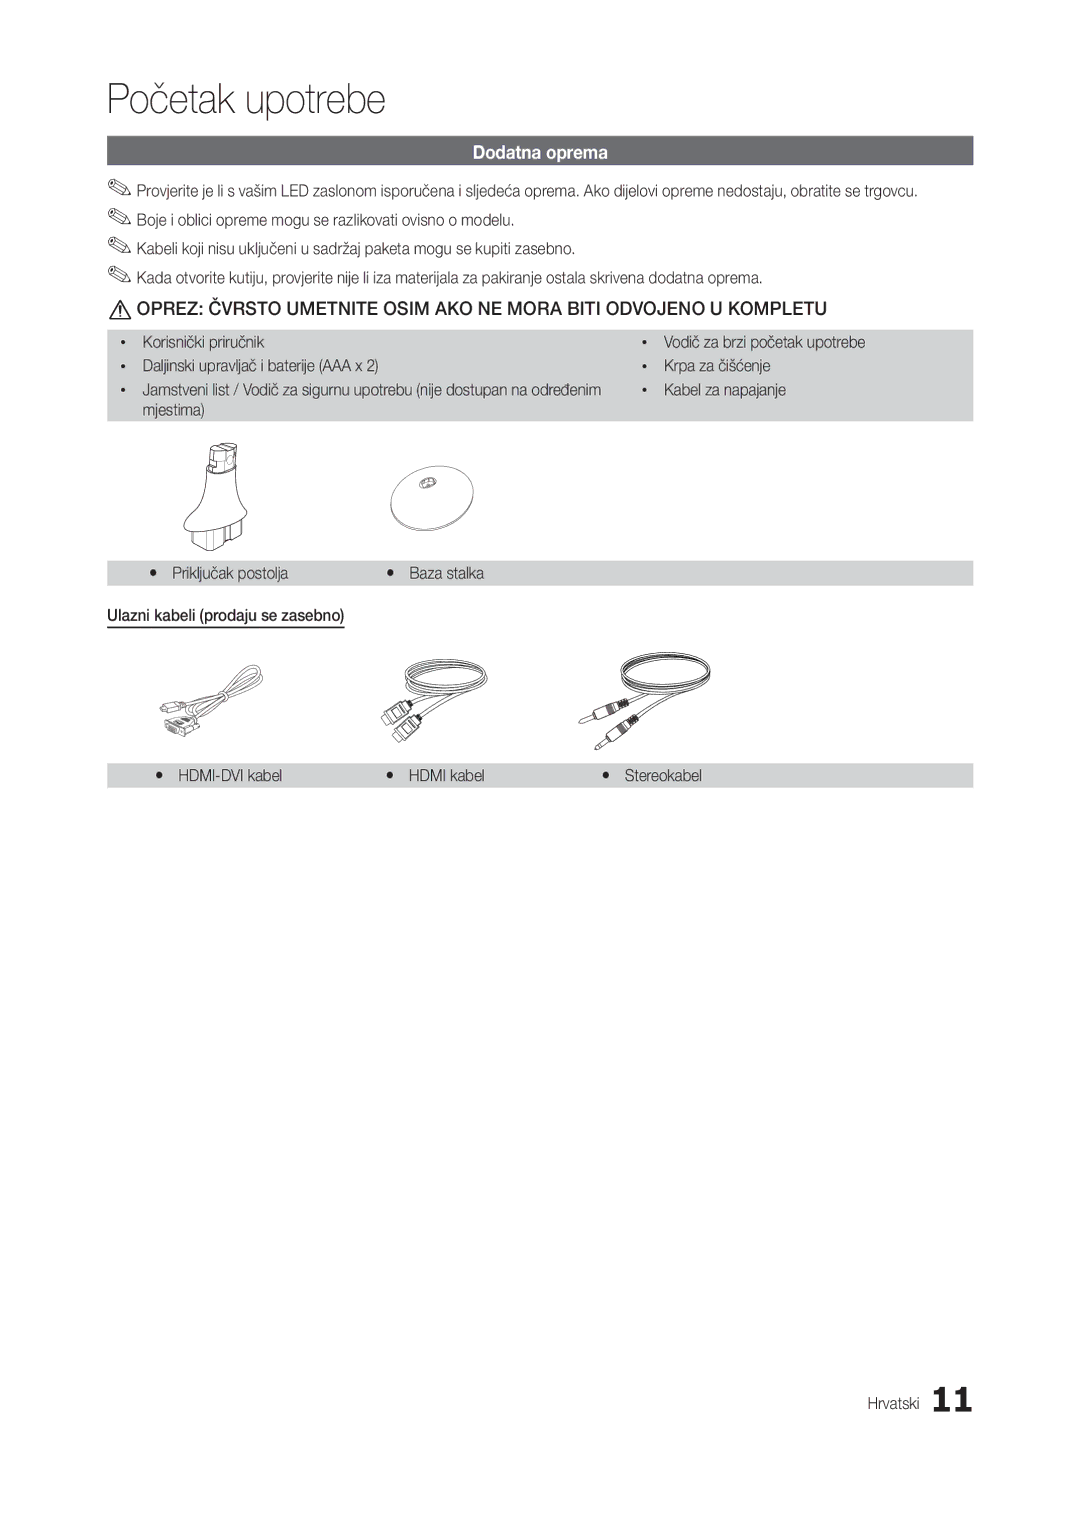 Samsung LT24B301EW/EN manual Dodatna oprema, Korisnički priručnik, Daljinski upravljač i baterije AAA x Krpa za čišćenje 